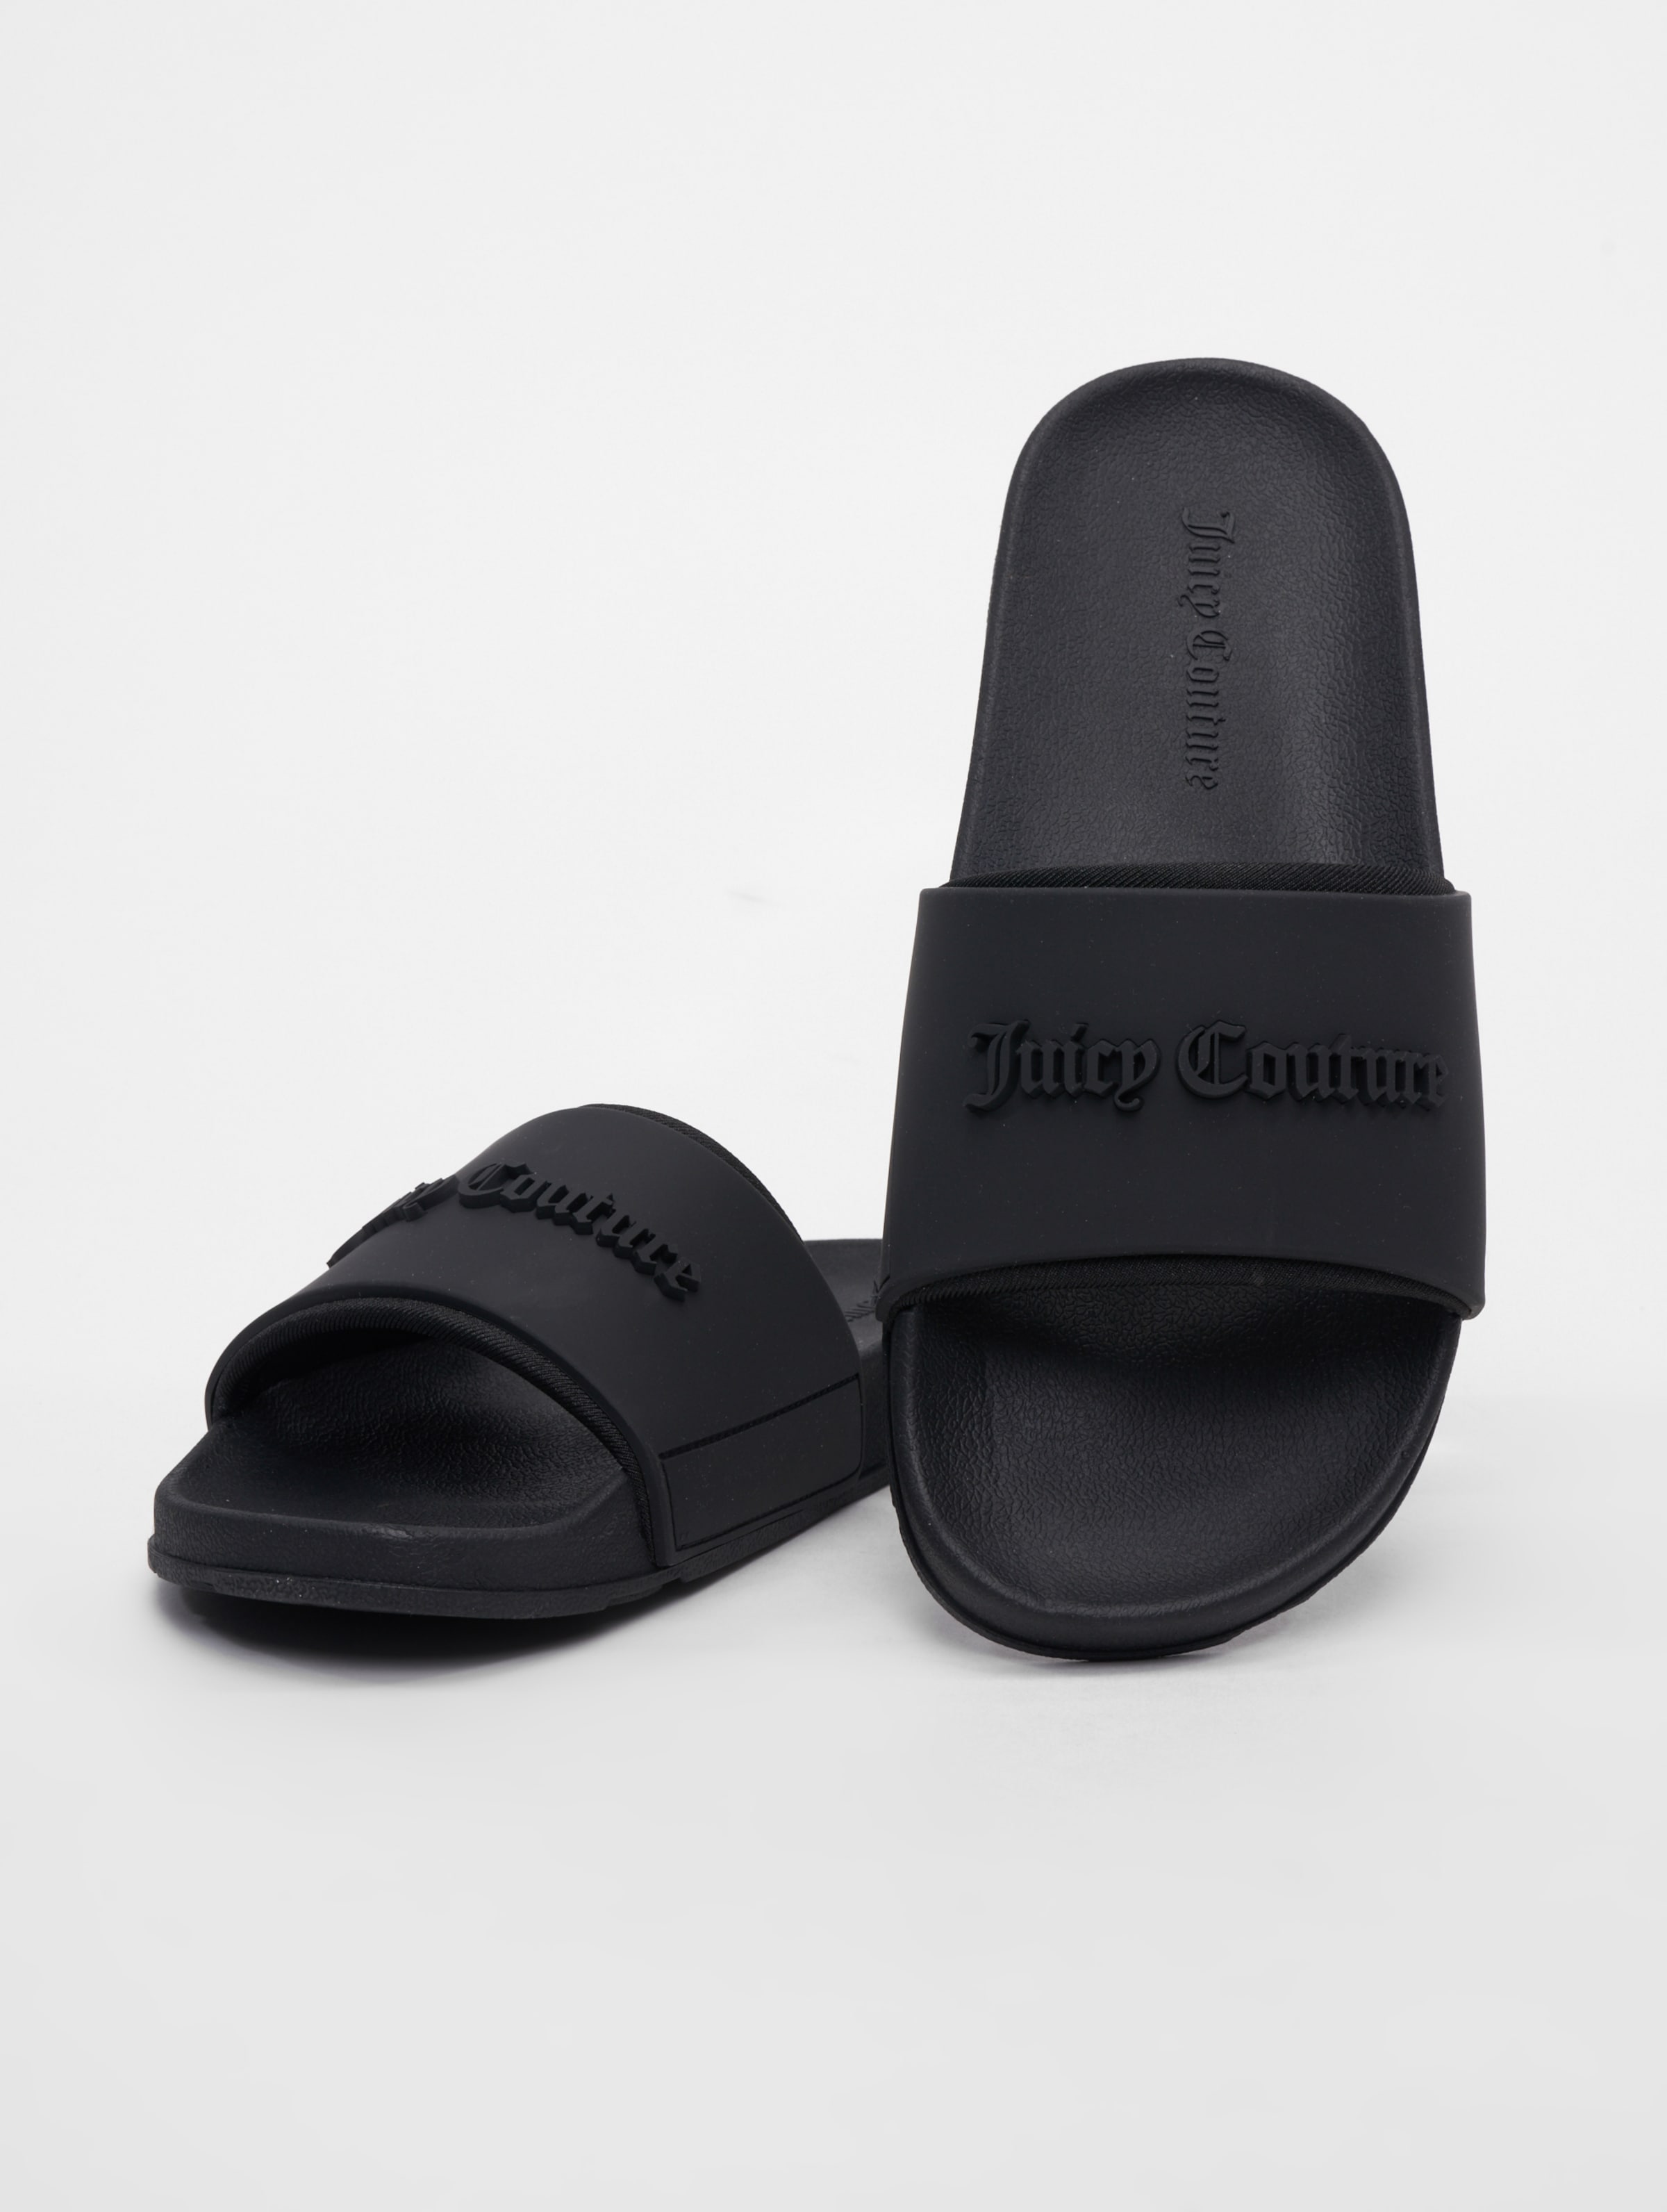 Juicy Couture Breanna Embrosse Sandalen Frauen,Unisex op kleur zwart, Maat 38